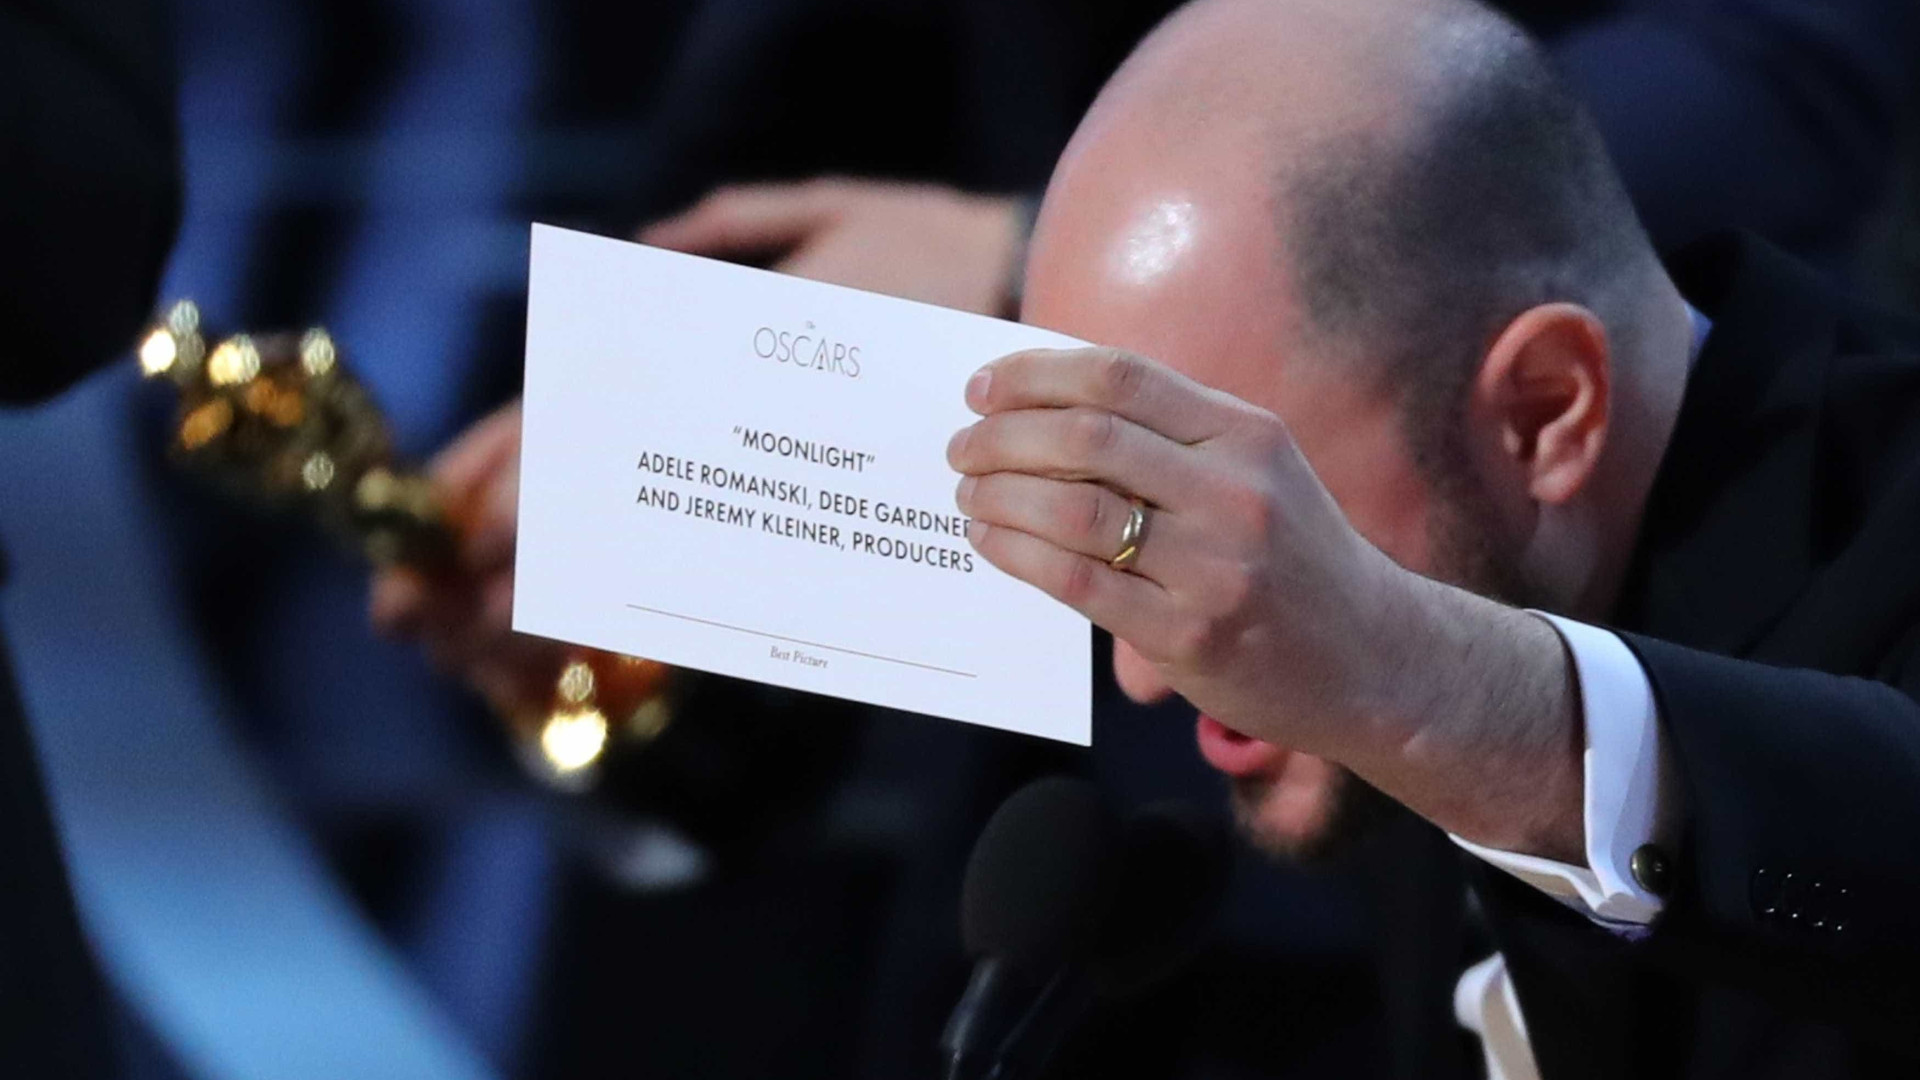 Empresa que audita o Oscar se desculpa
e diz que vai investigar erro